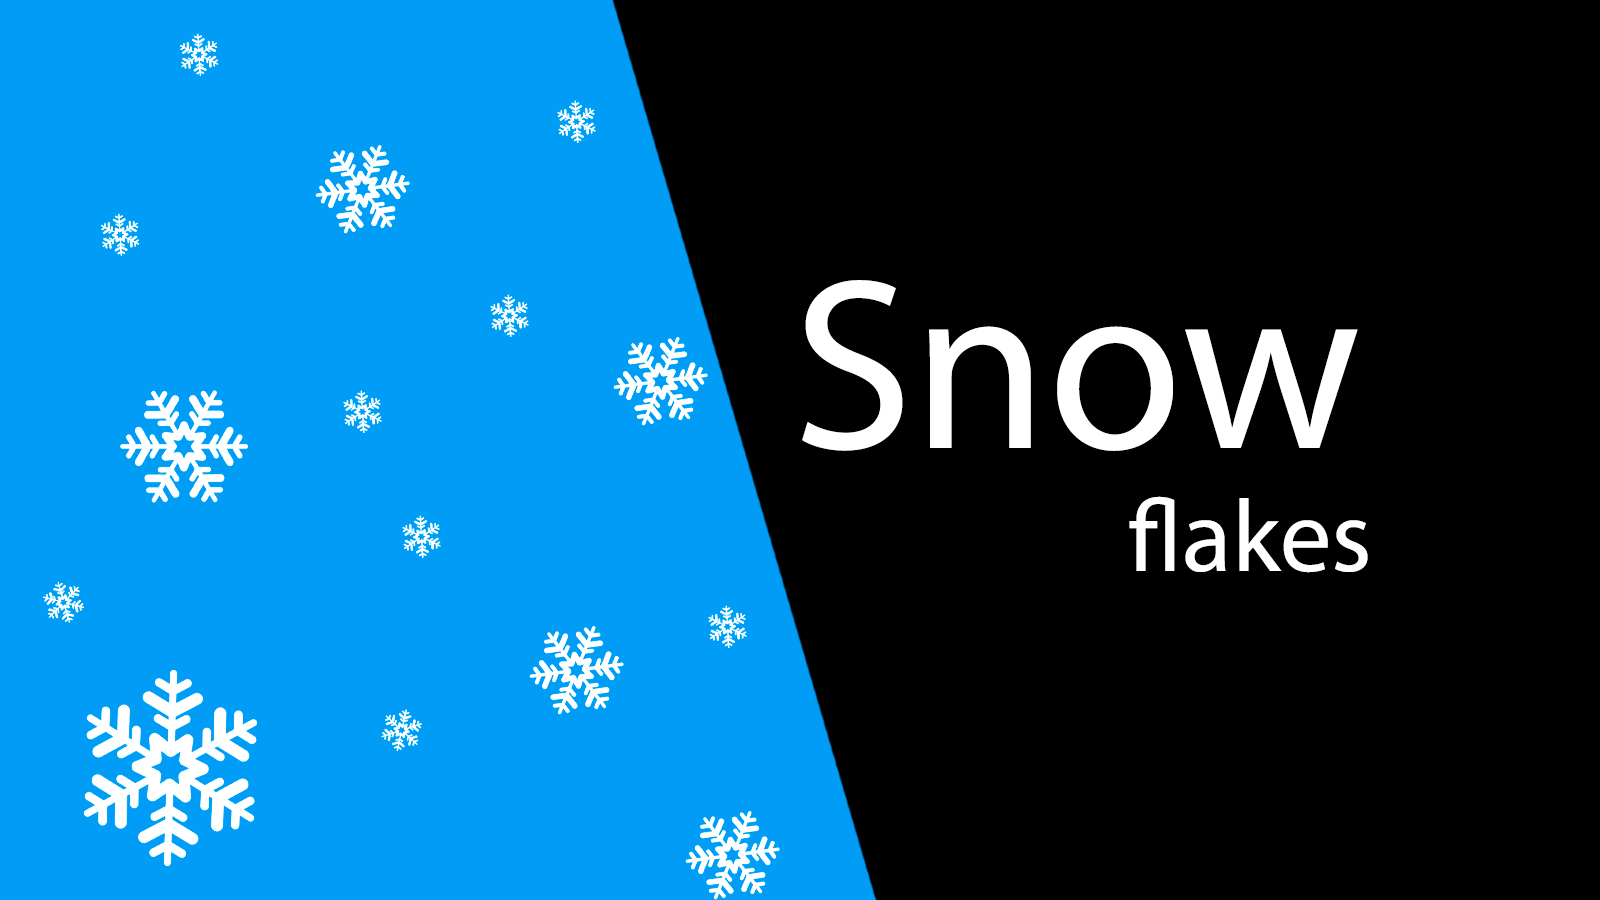 Snow flakes - Efecto de nieve en tu tienda